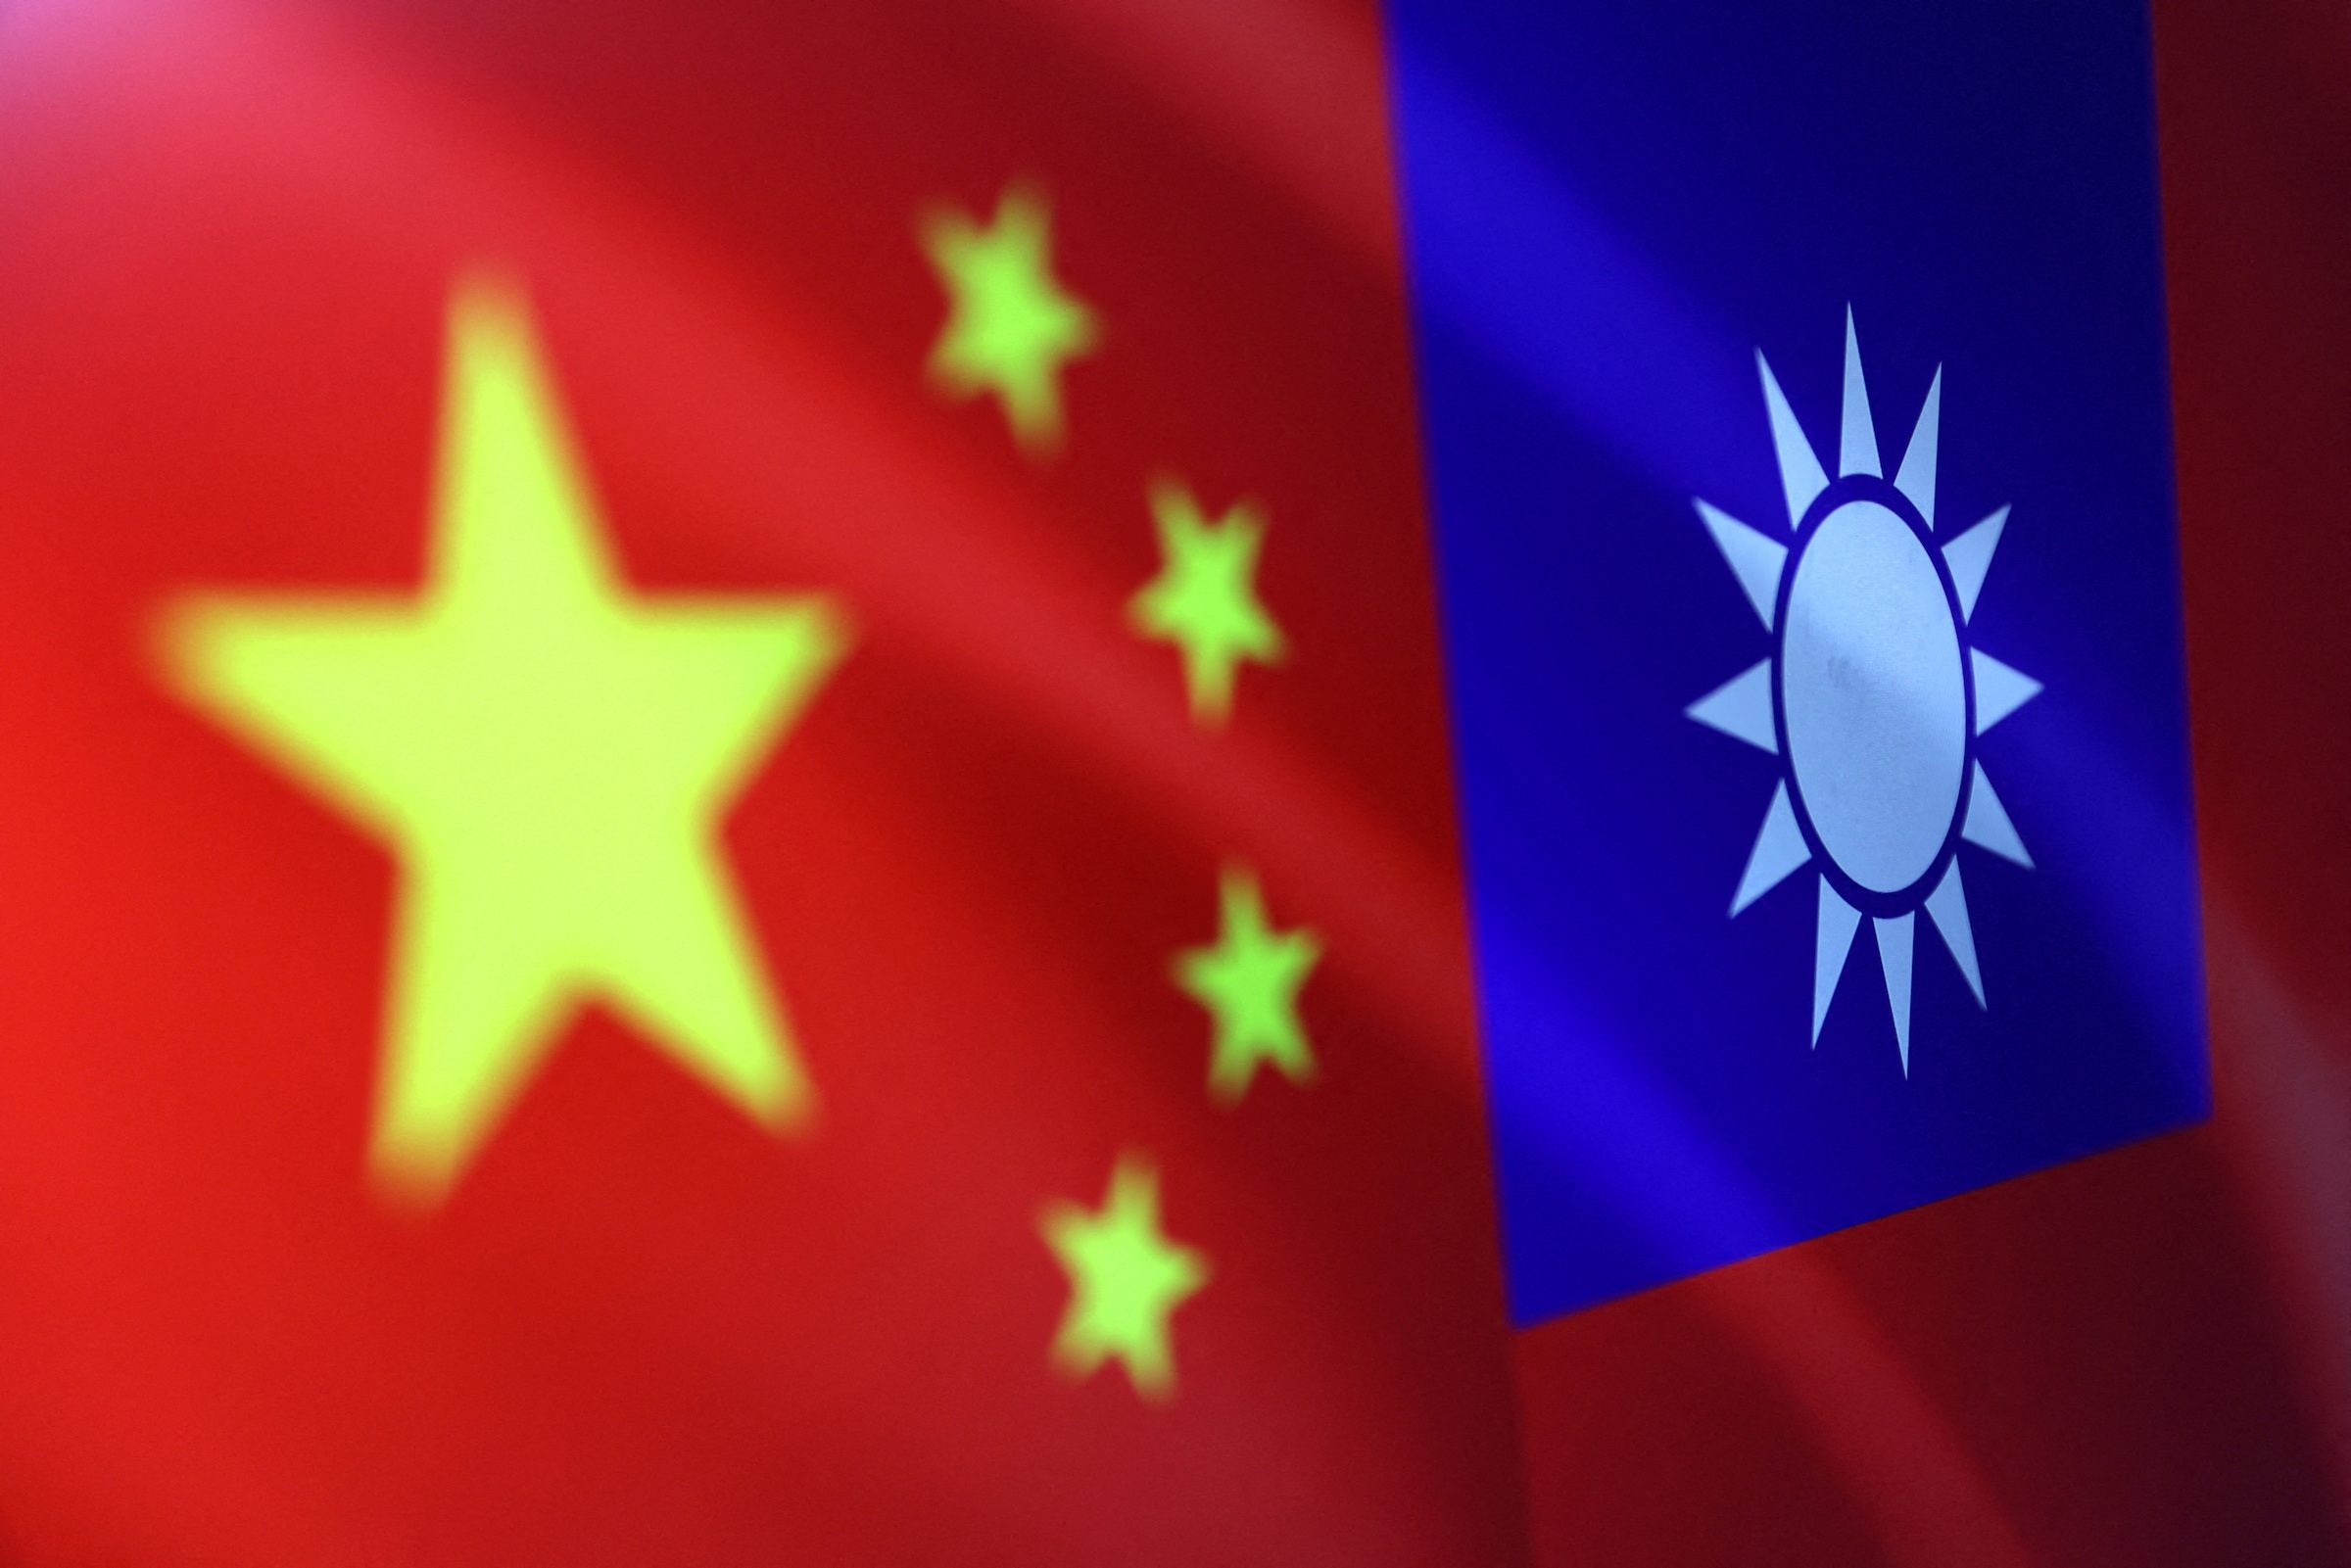 Taiwan activates air defense as China aircraft enter zone